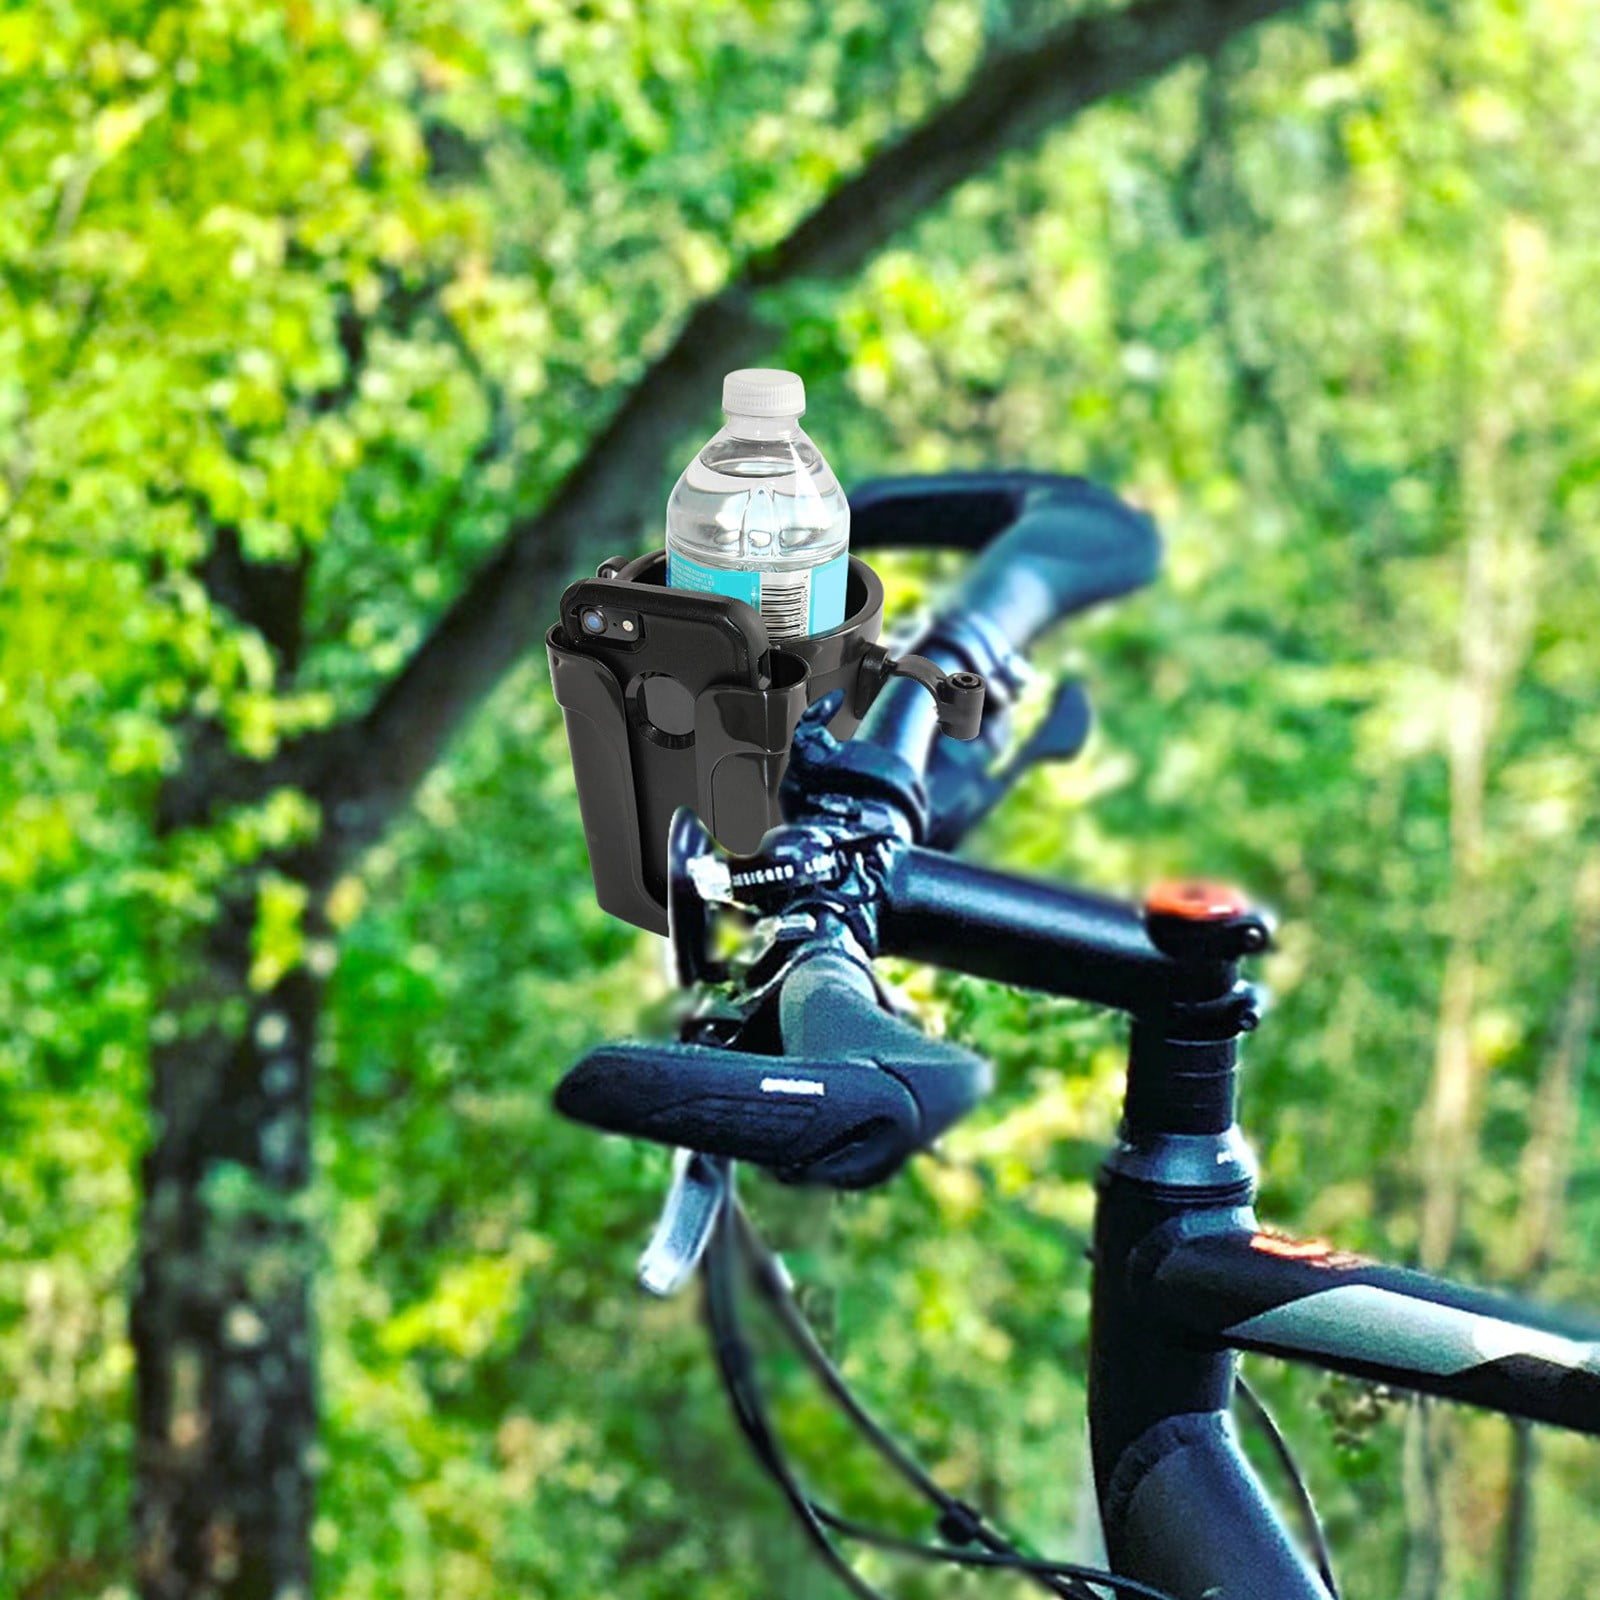 Ozark Trail Aluminum Water Bottle Holder for Bikes - Multicolor - 1 Each